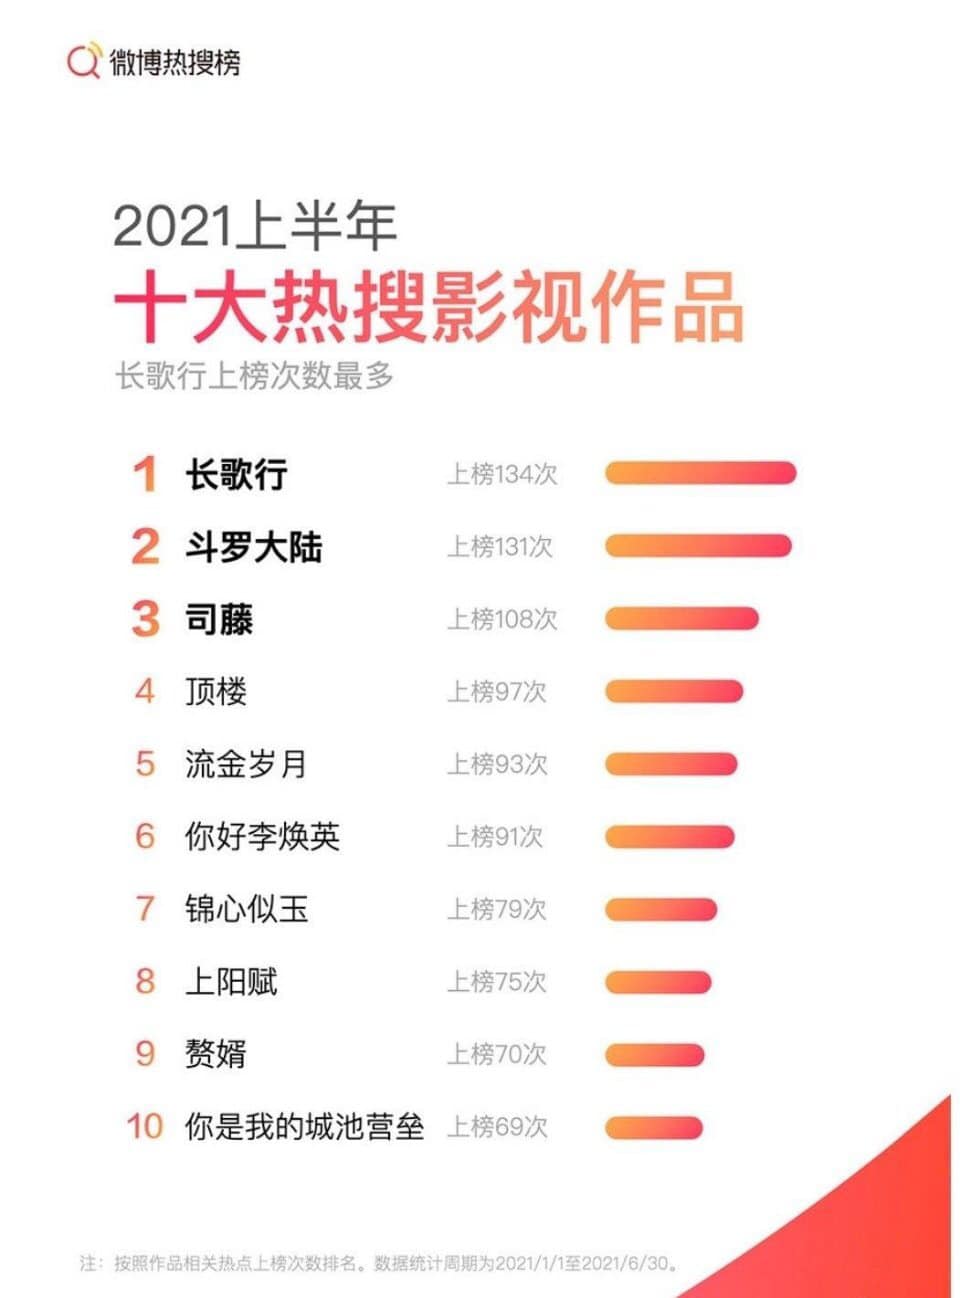 Thống kê Hot seach weibo nửa đầu năm 2021: Tiêu Chiến, Nhất Bác thắng đậm các mảng 5